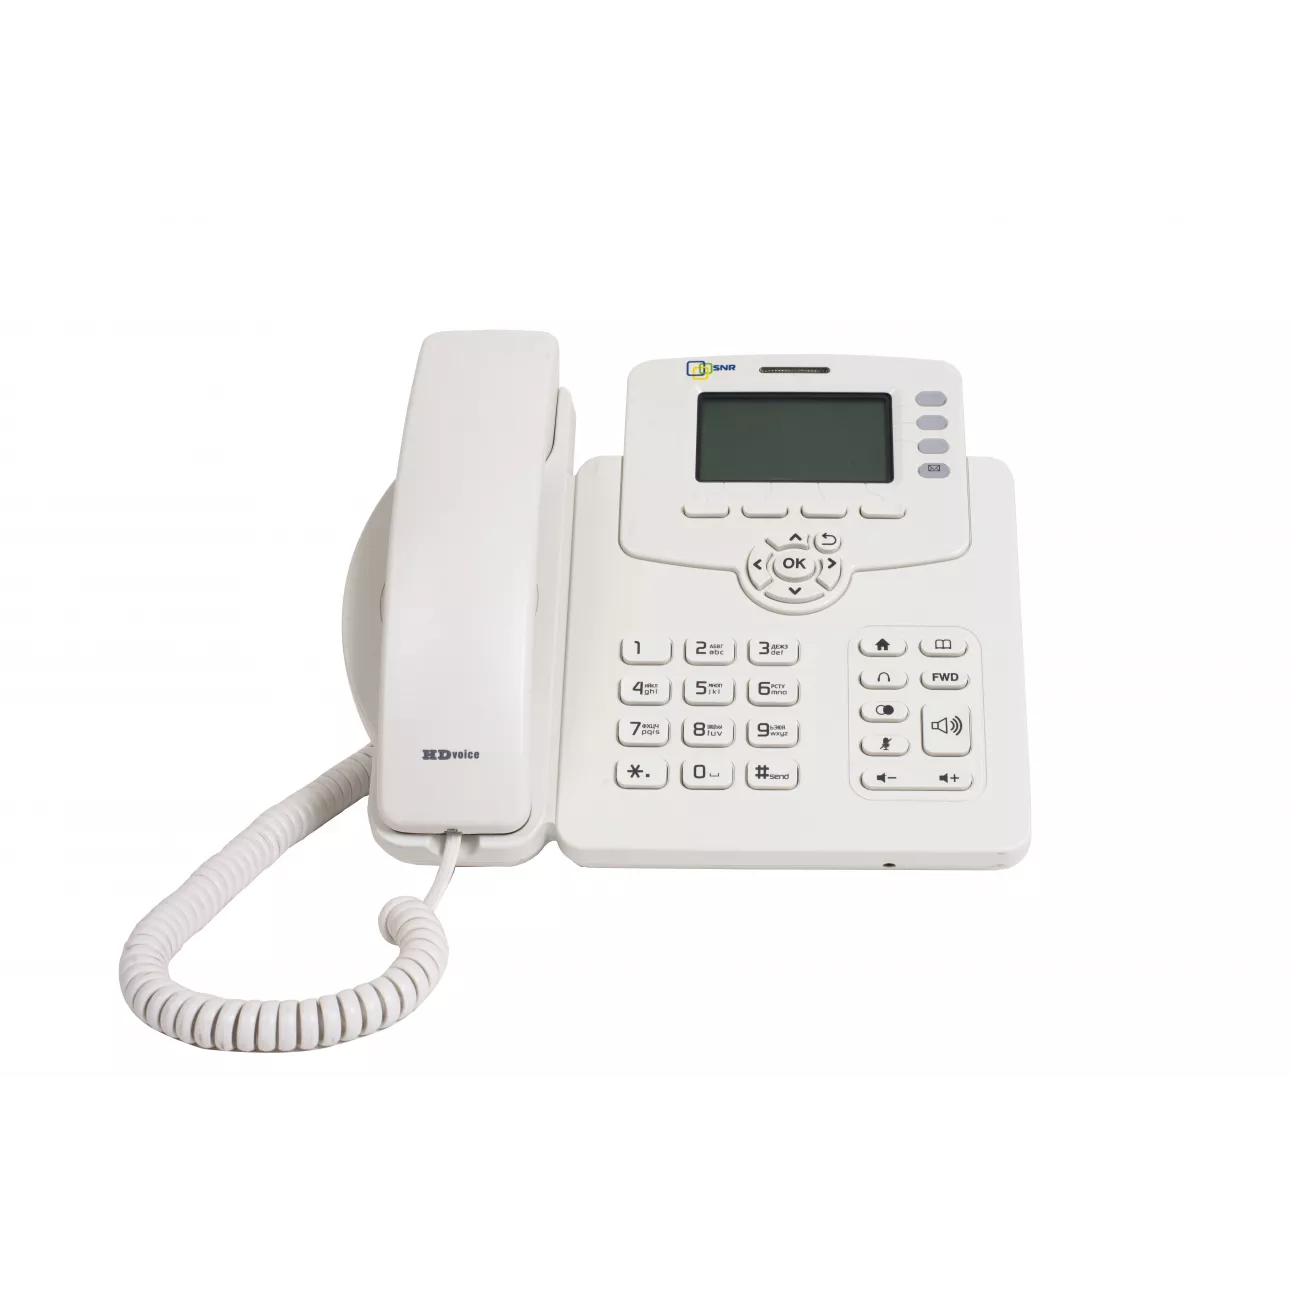 IP-телефон SNR-VP-53W, поддержка PoE, белый цвет